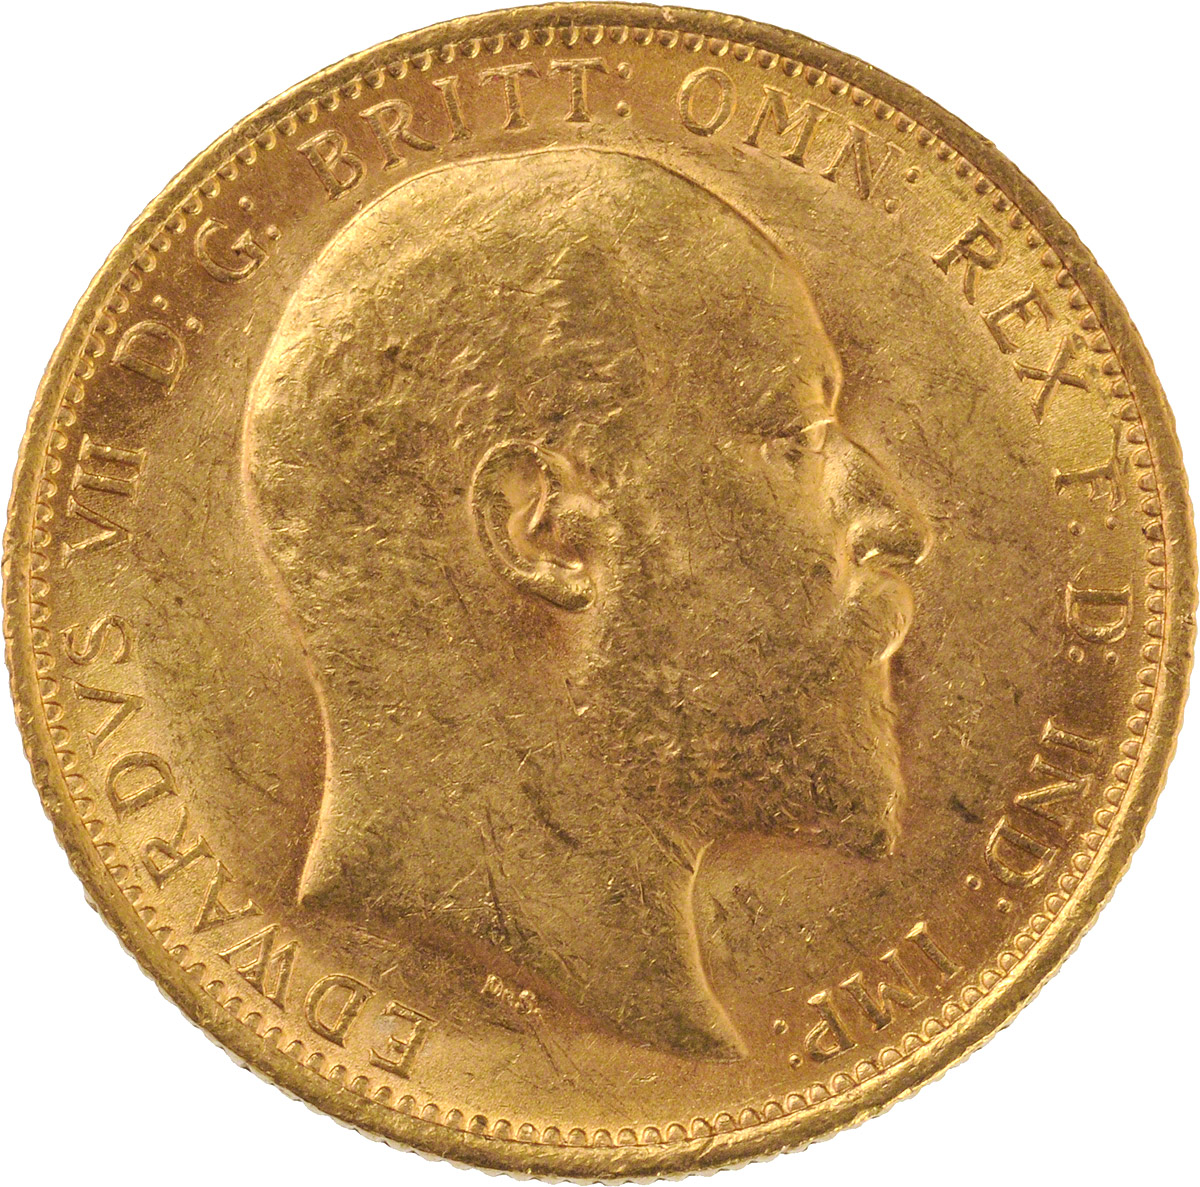 1905 Εδουάρδος Ζ’ (Νομισματοκοπείο Σίδνεϊ)